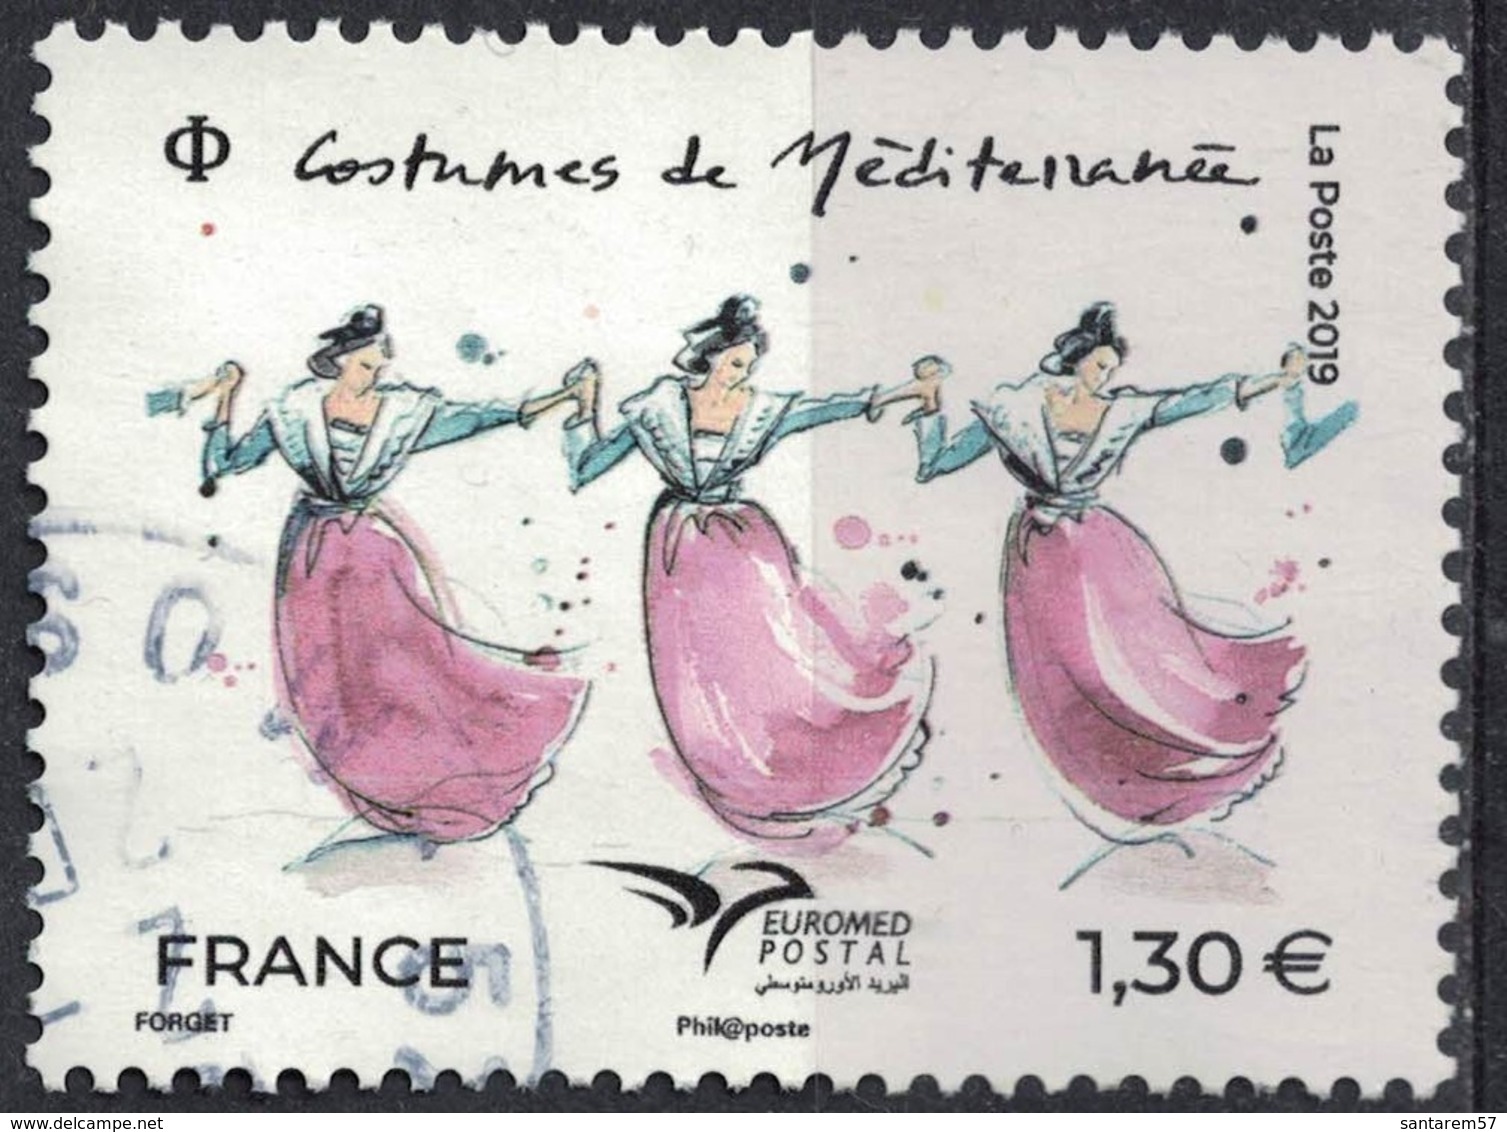 France 2019 Oblitéré Rond Used Euromed Postal Costumes De Méditerranée SU - Oblitérés